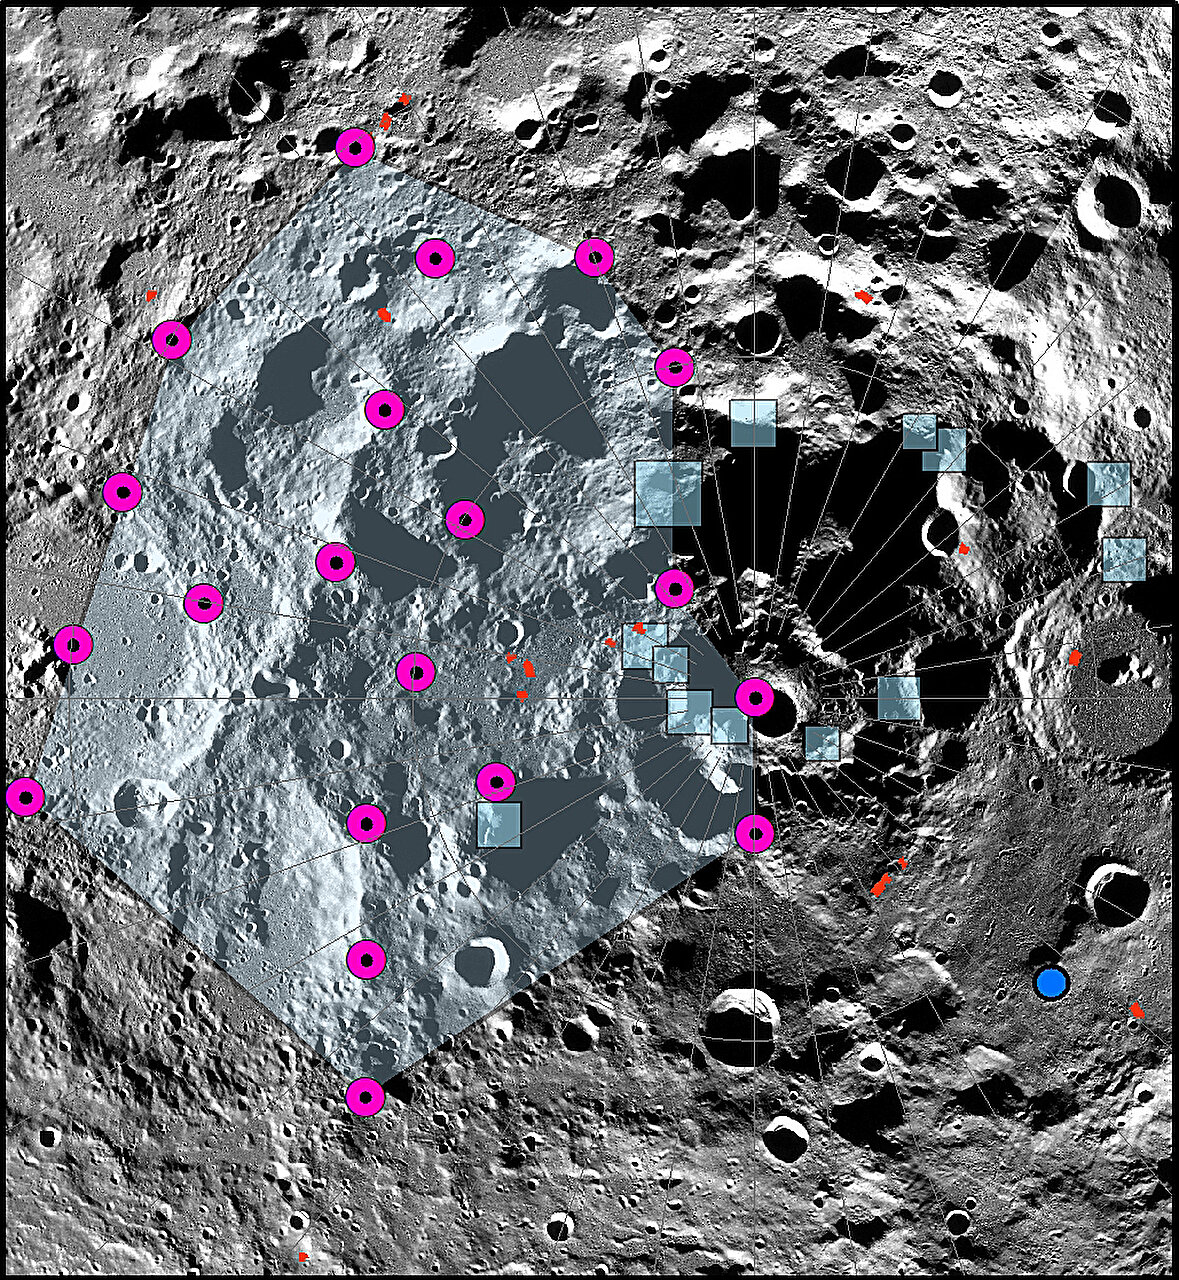 Los científicos descubren que la luna se está reduciendo, provocando deslizamientos de tierra e inestabilidad en el polo sur lunar